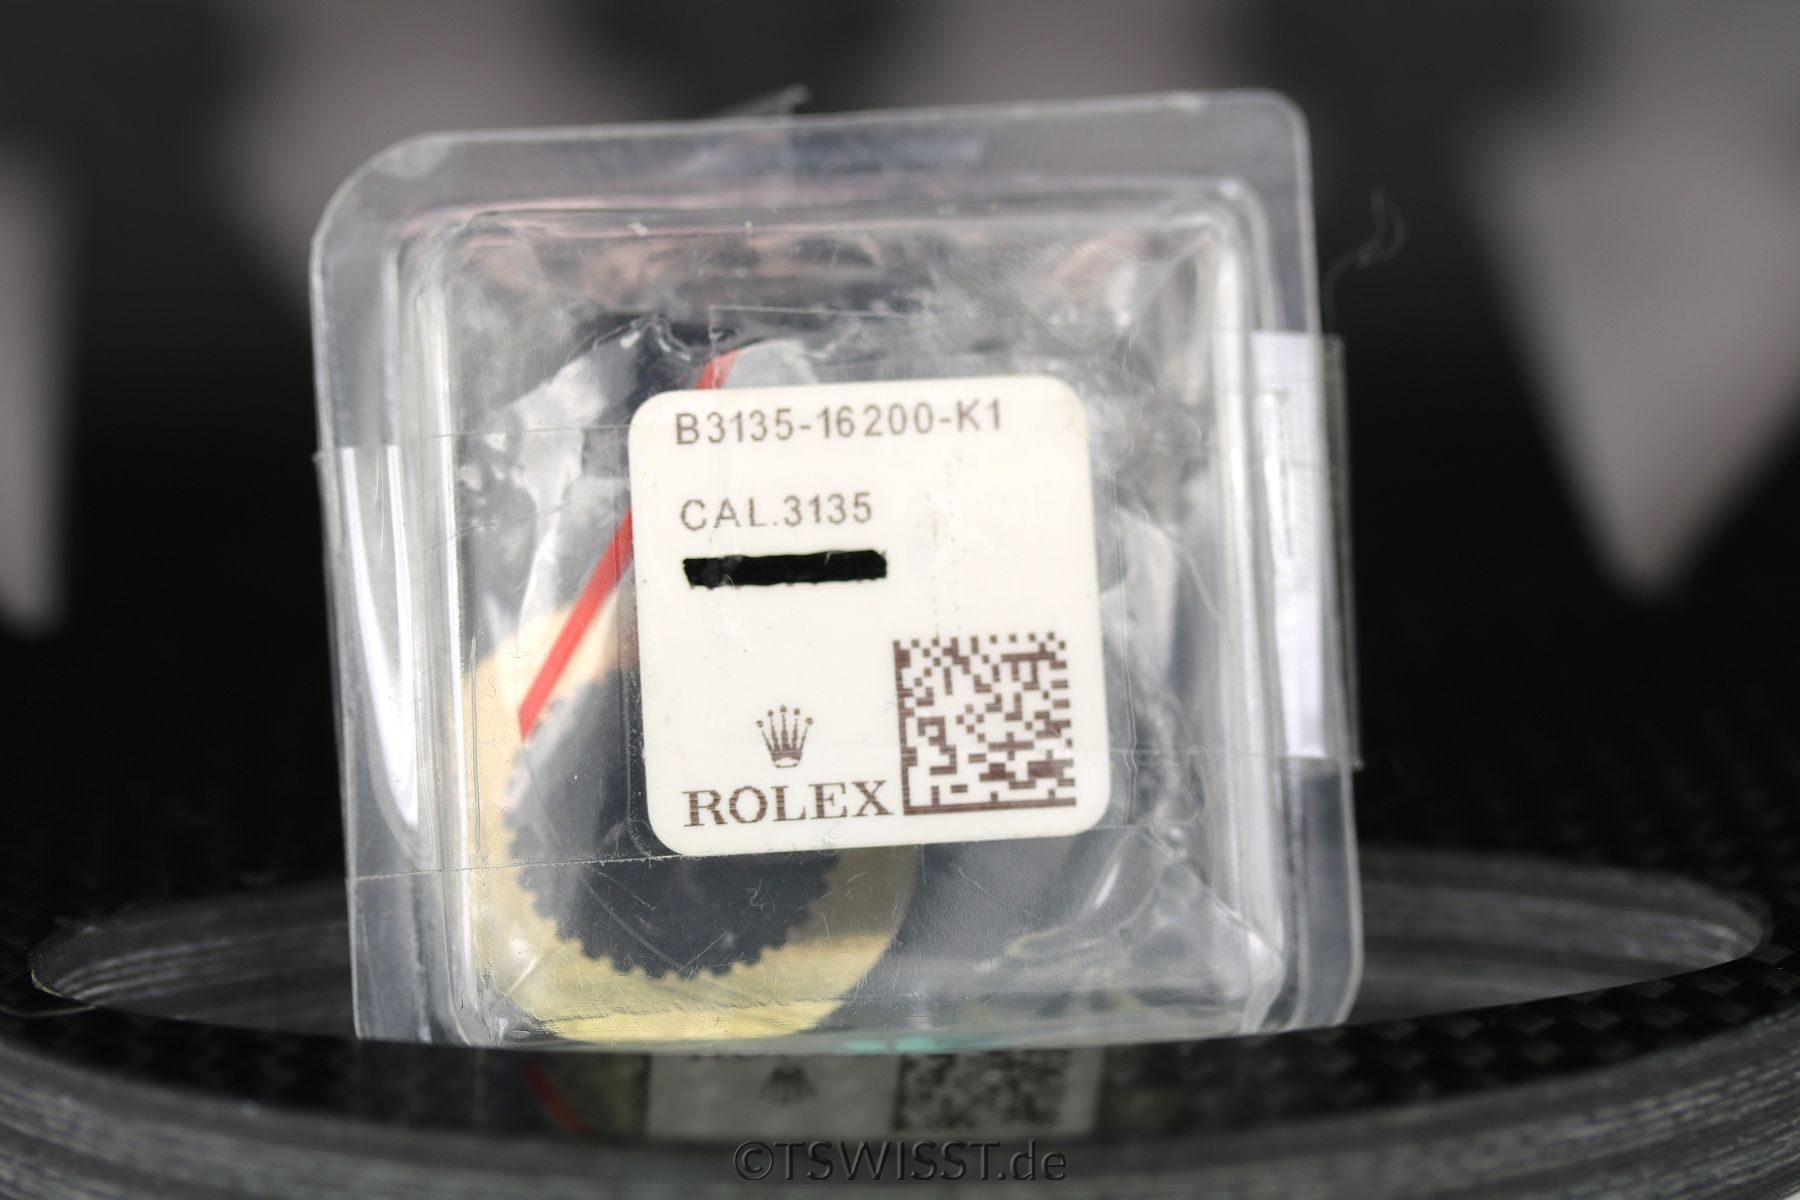 Rolex cal. 3135 date wheel